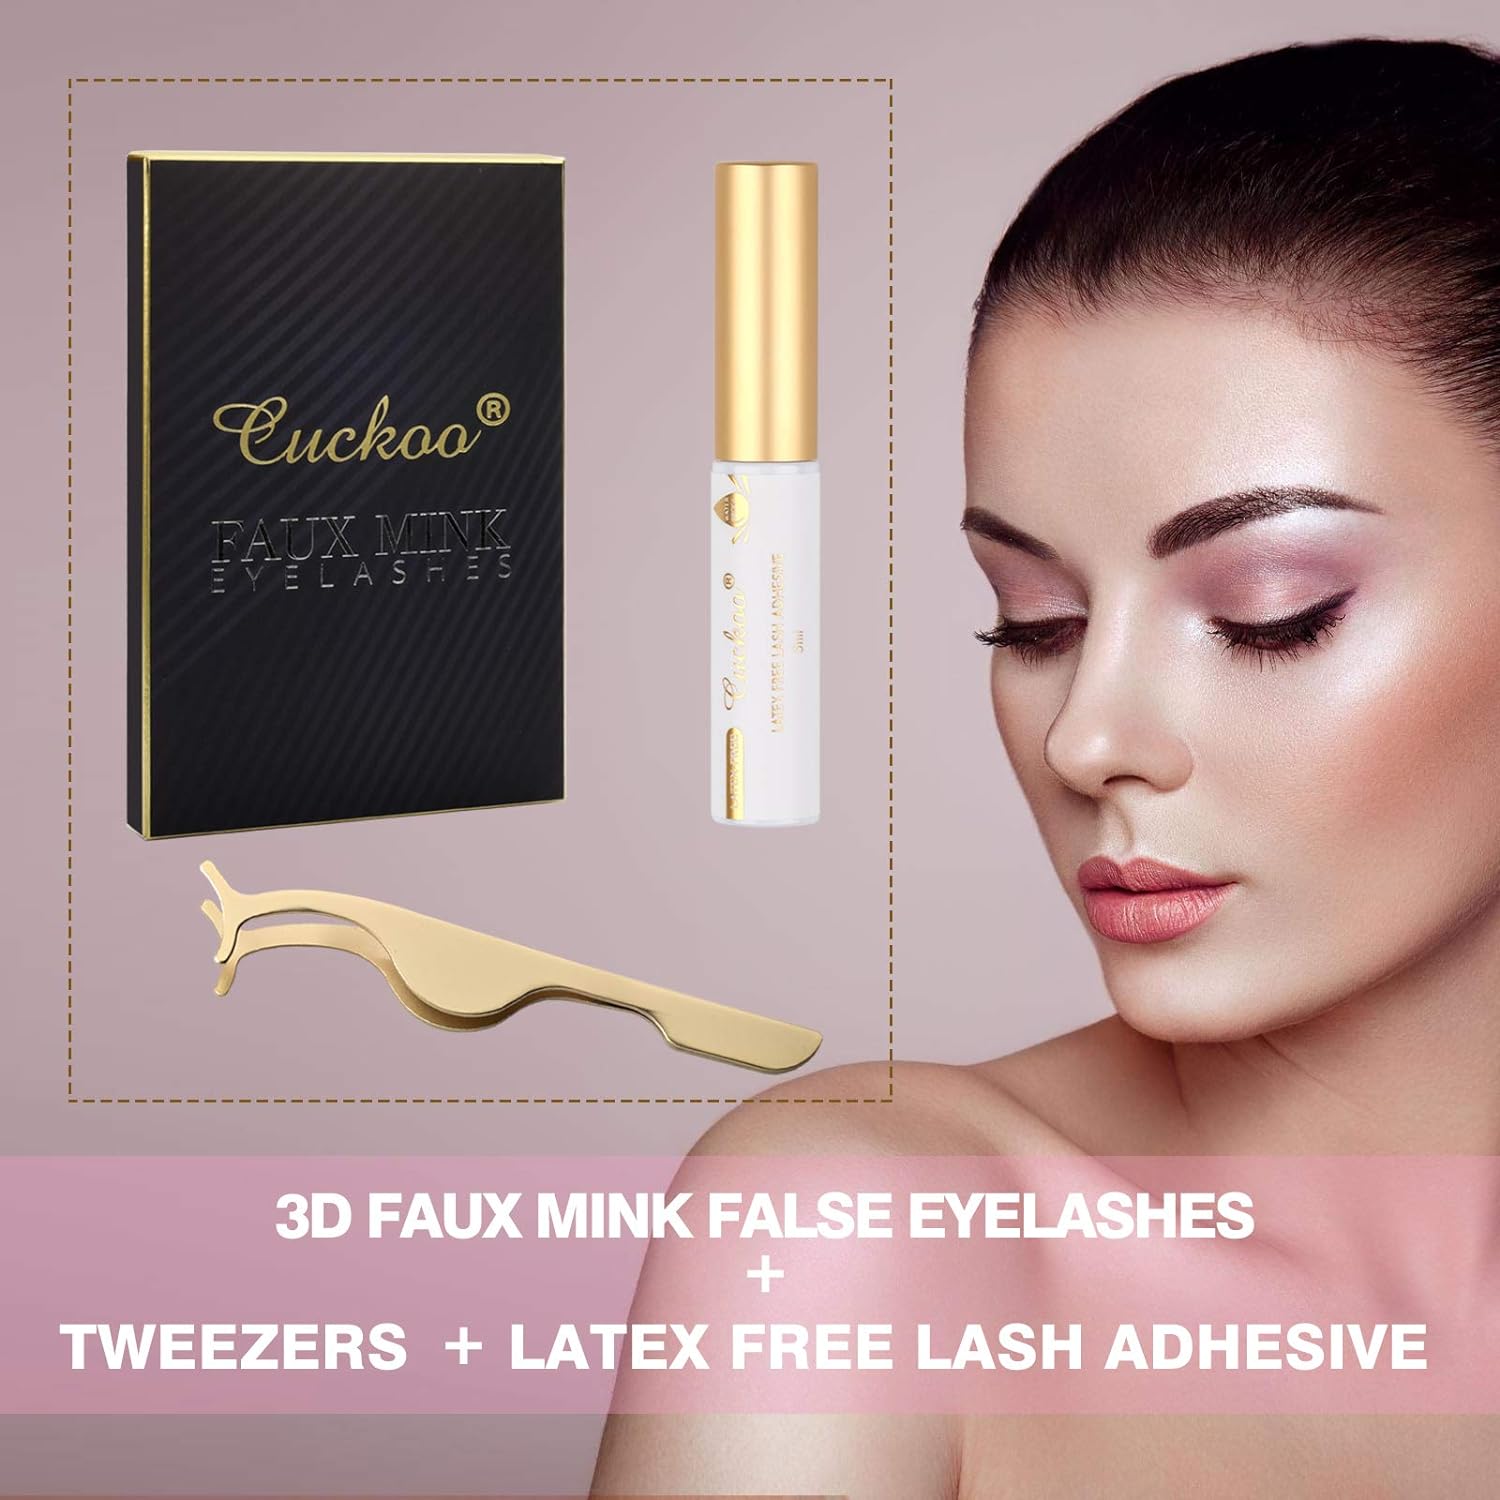 Cuckoo Lashes Pack,5 Pairs 3D Faux Mink Eyelashes with Eyelash Glue Kit, False Eyelashes for Women,Reusable Makeup Soft Natural Look Fake Eyelashes